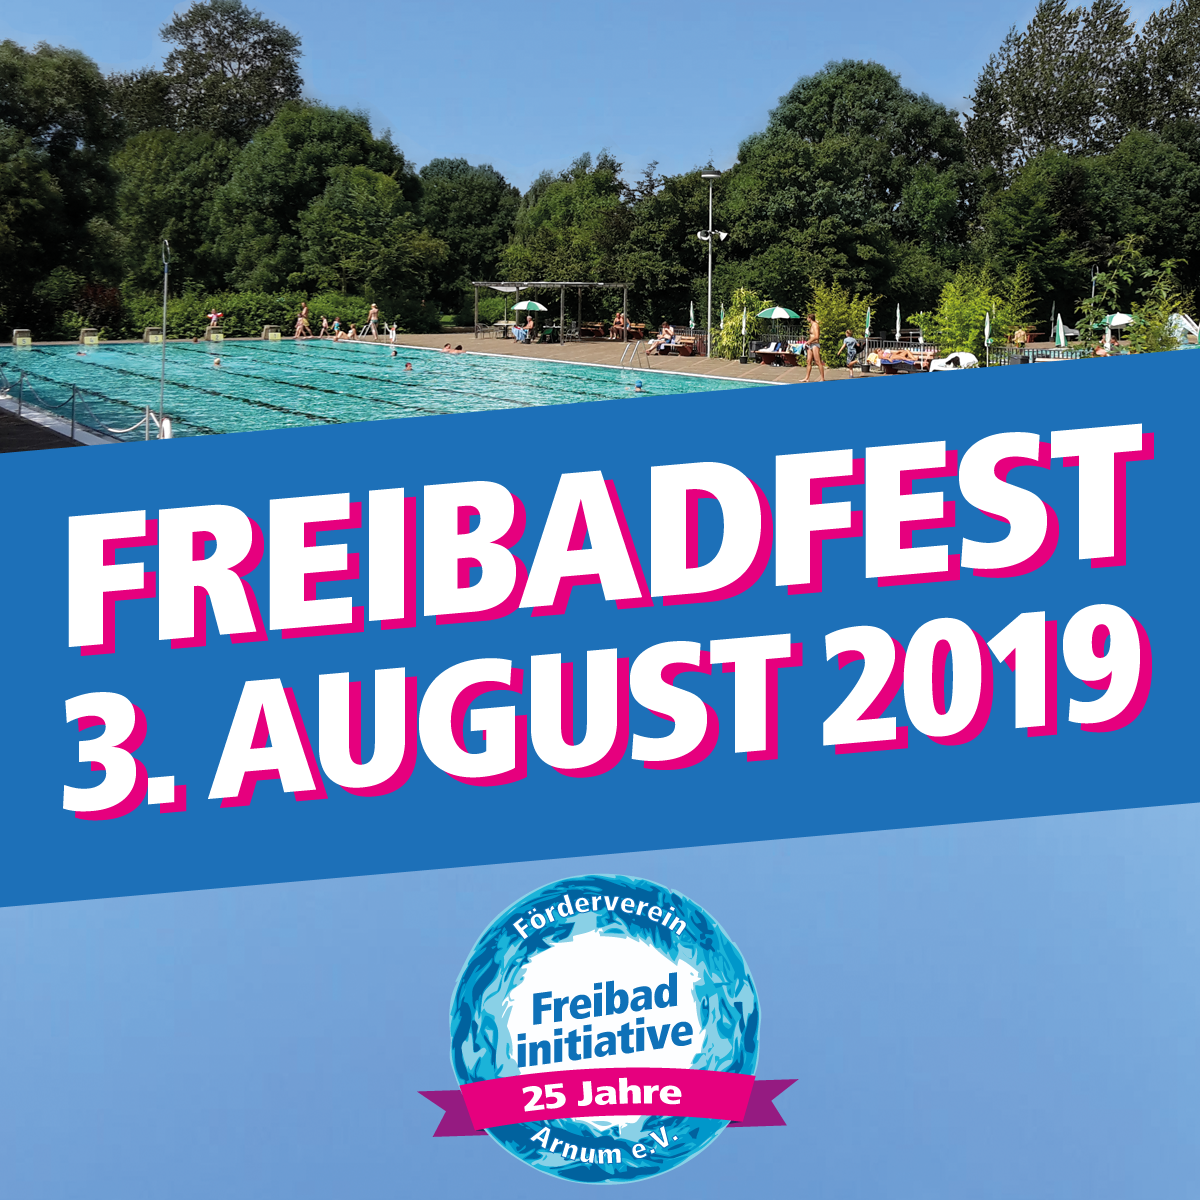 Freibadfest am 3. August 2019